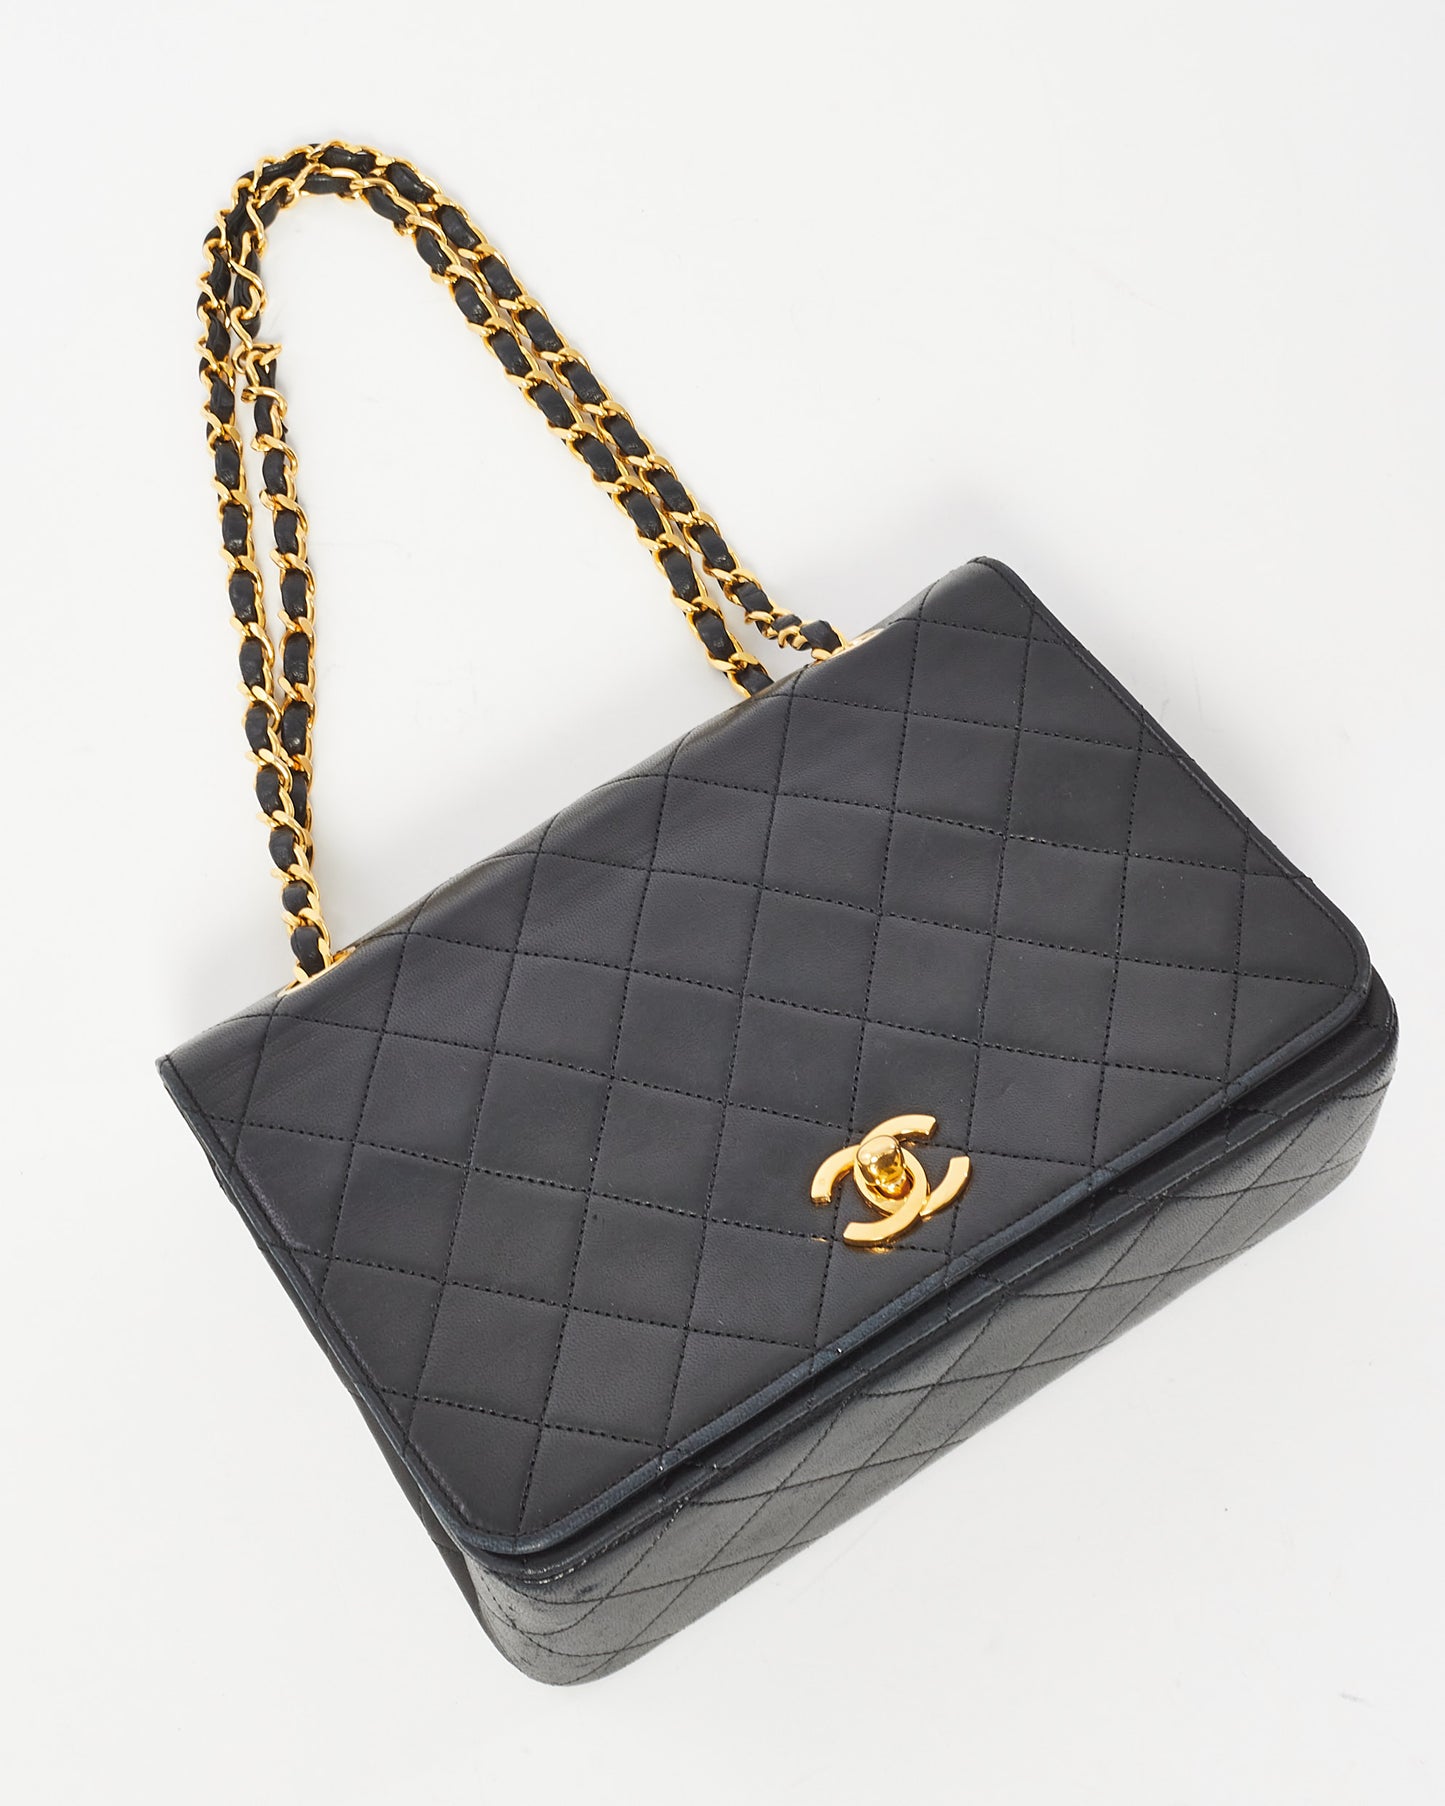 Chanel Vintage Black Leather Full Flap Bag